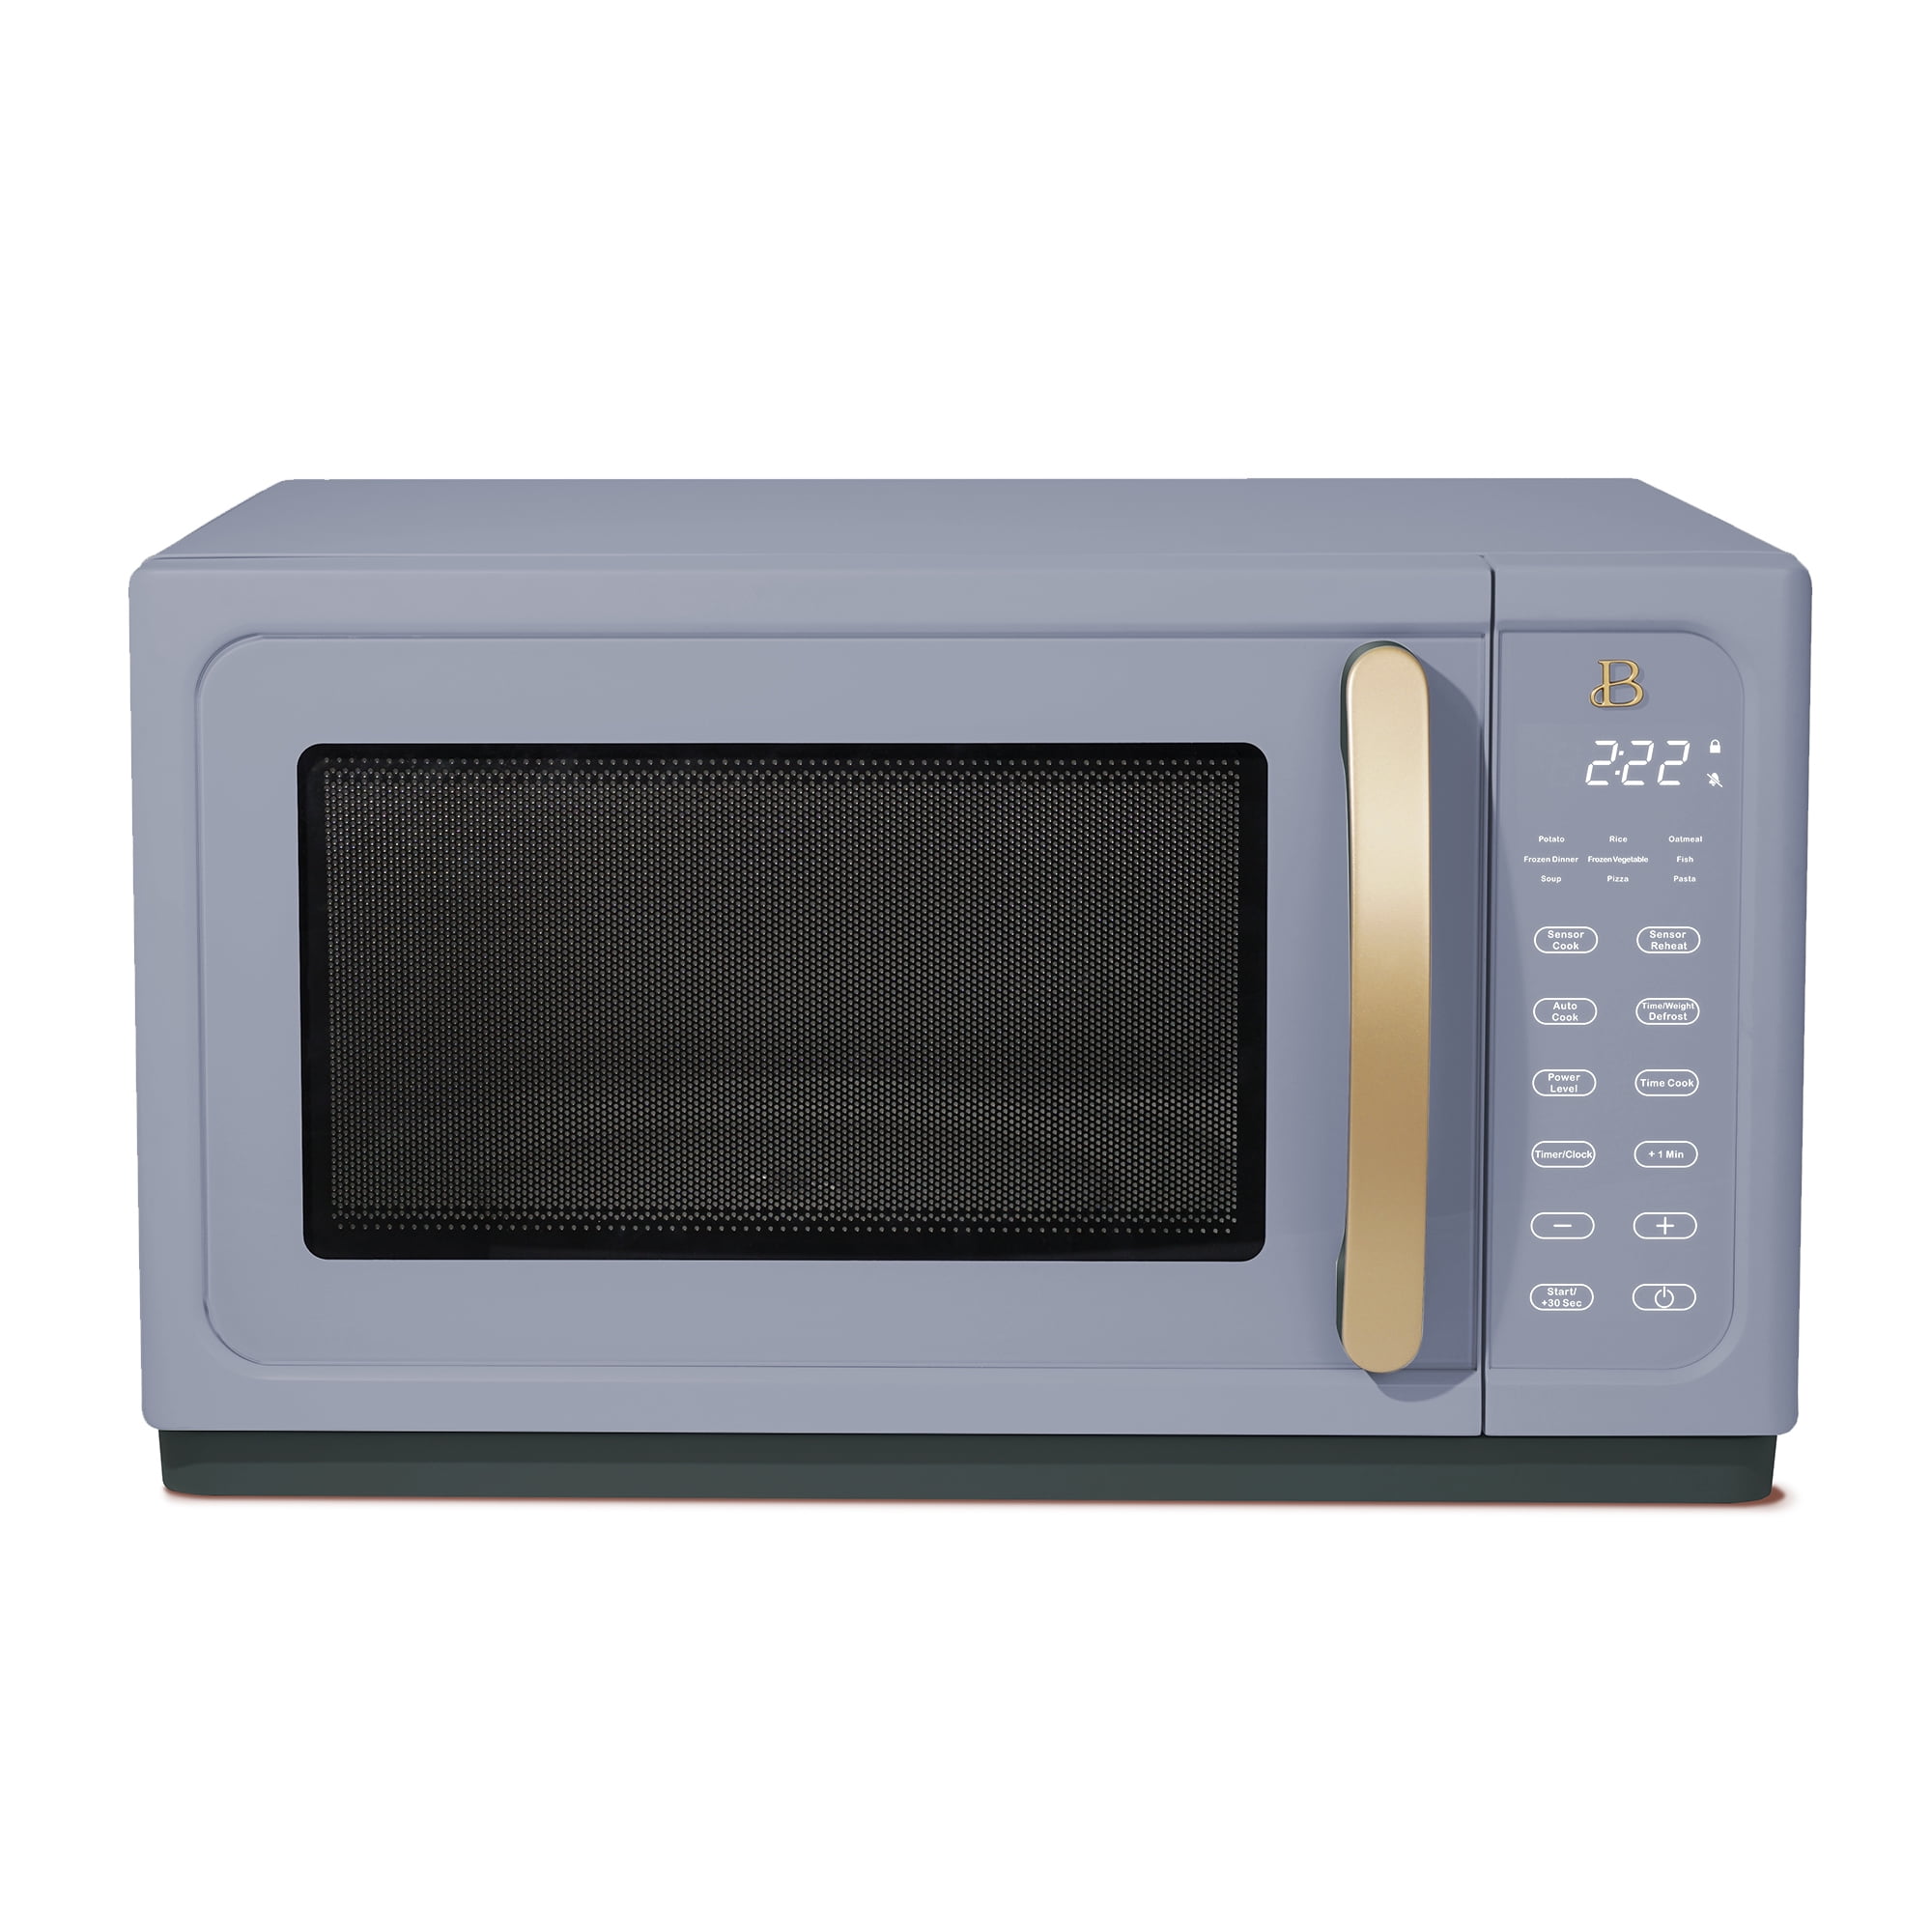 Beautiful 1.1 Cu ft 1000 Watt, Sensor Microwave Oven, Cornflower Blue by Drew Barrymore